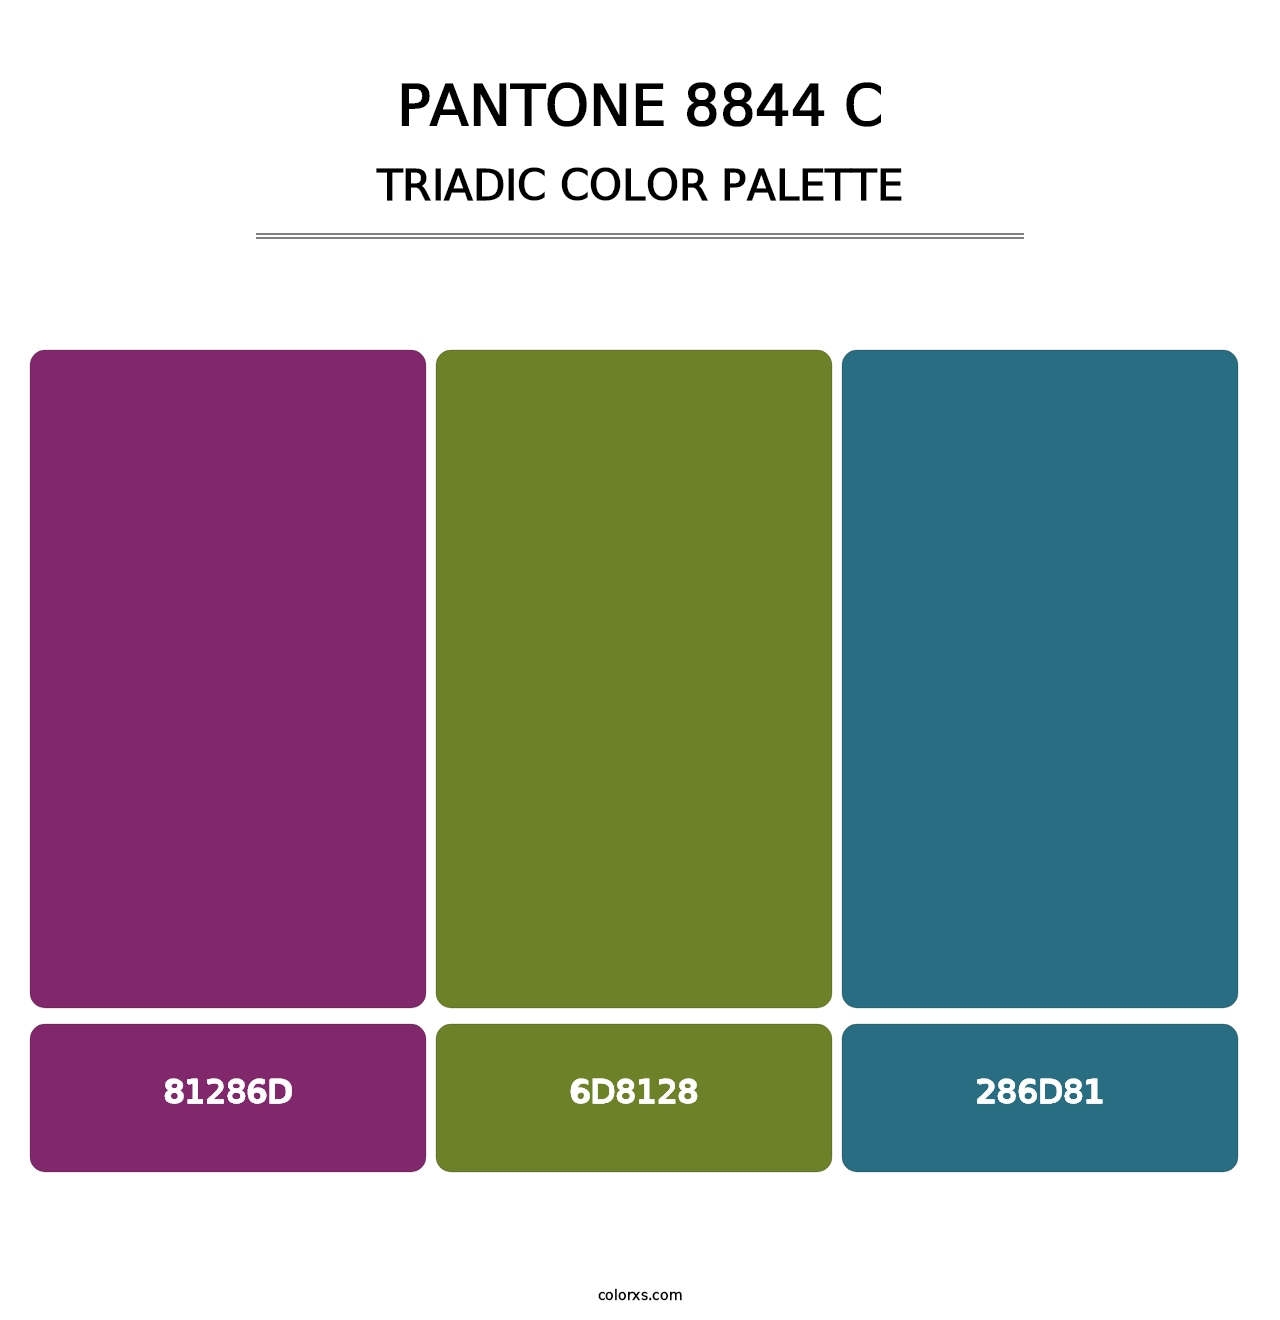 PANTONE 8844 C - Triadic Color Palette